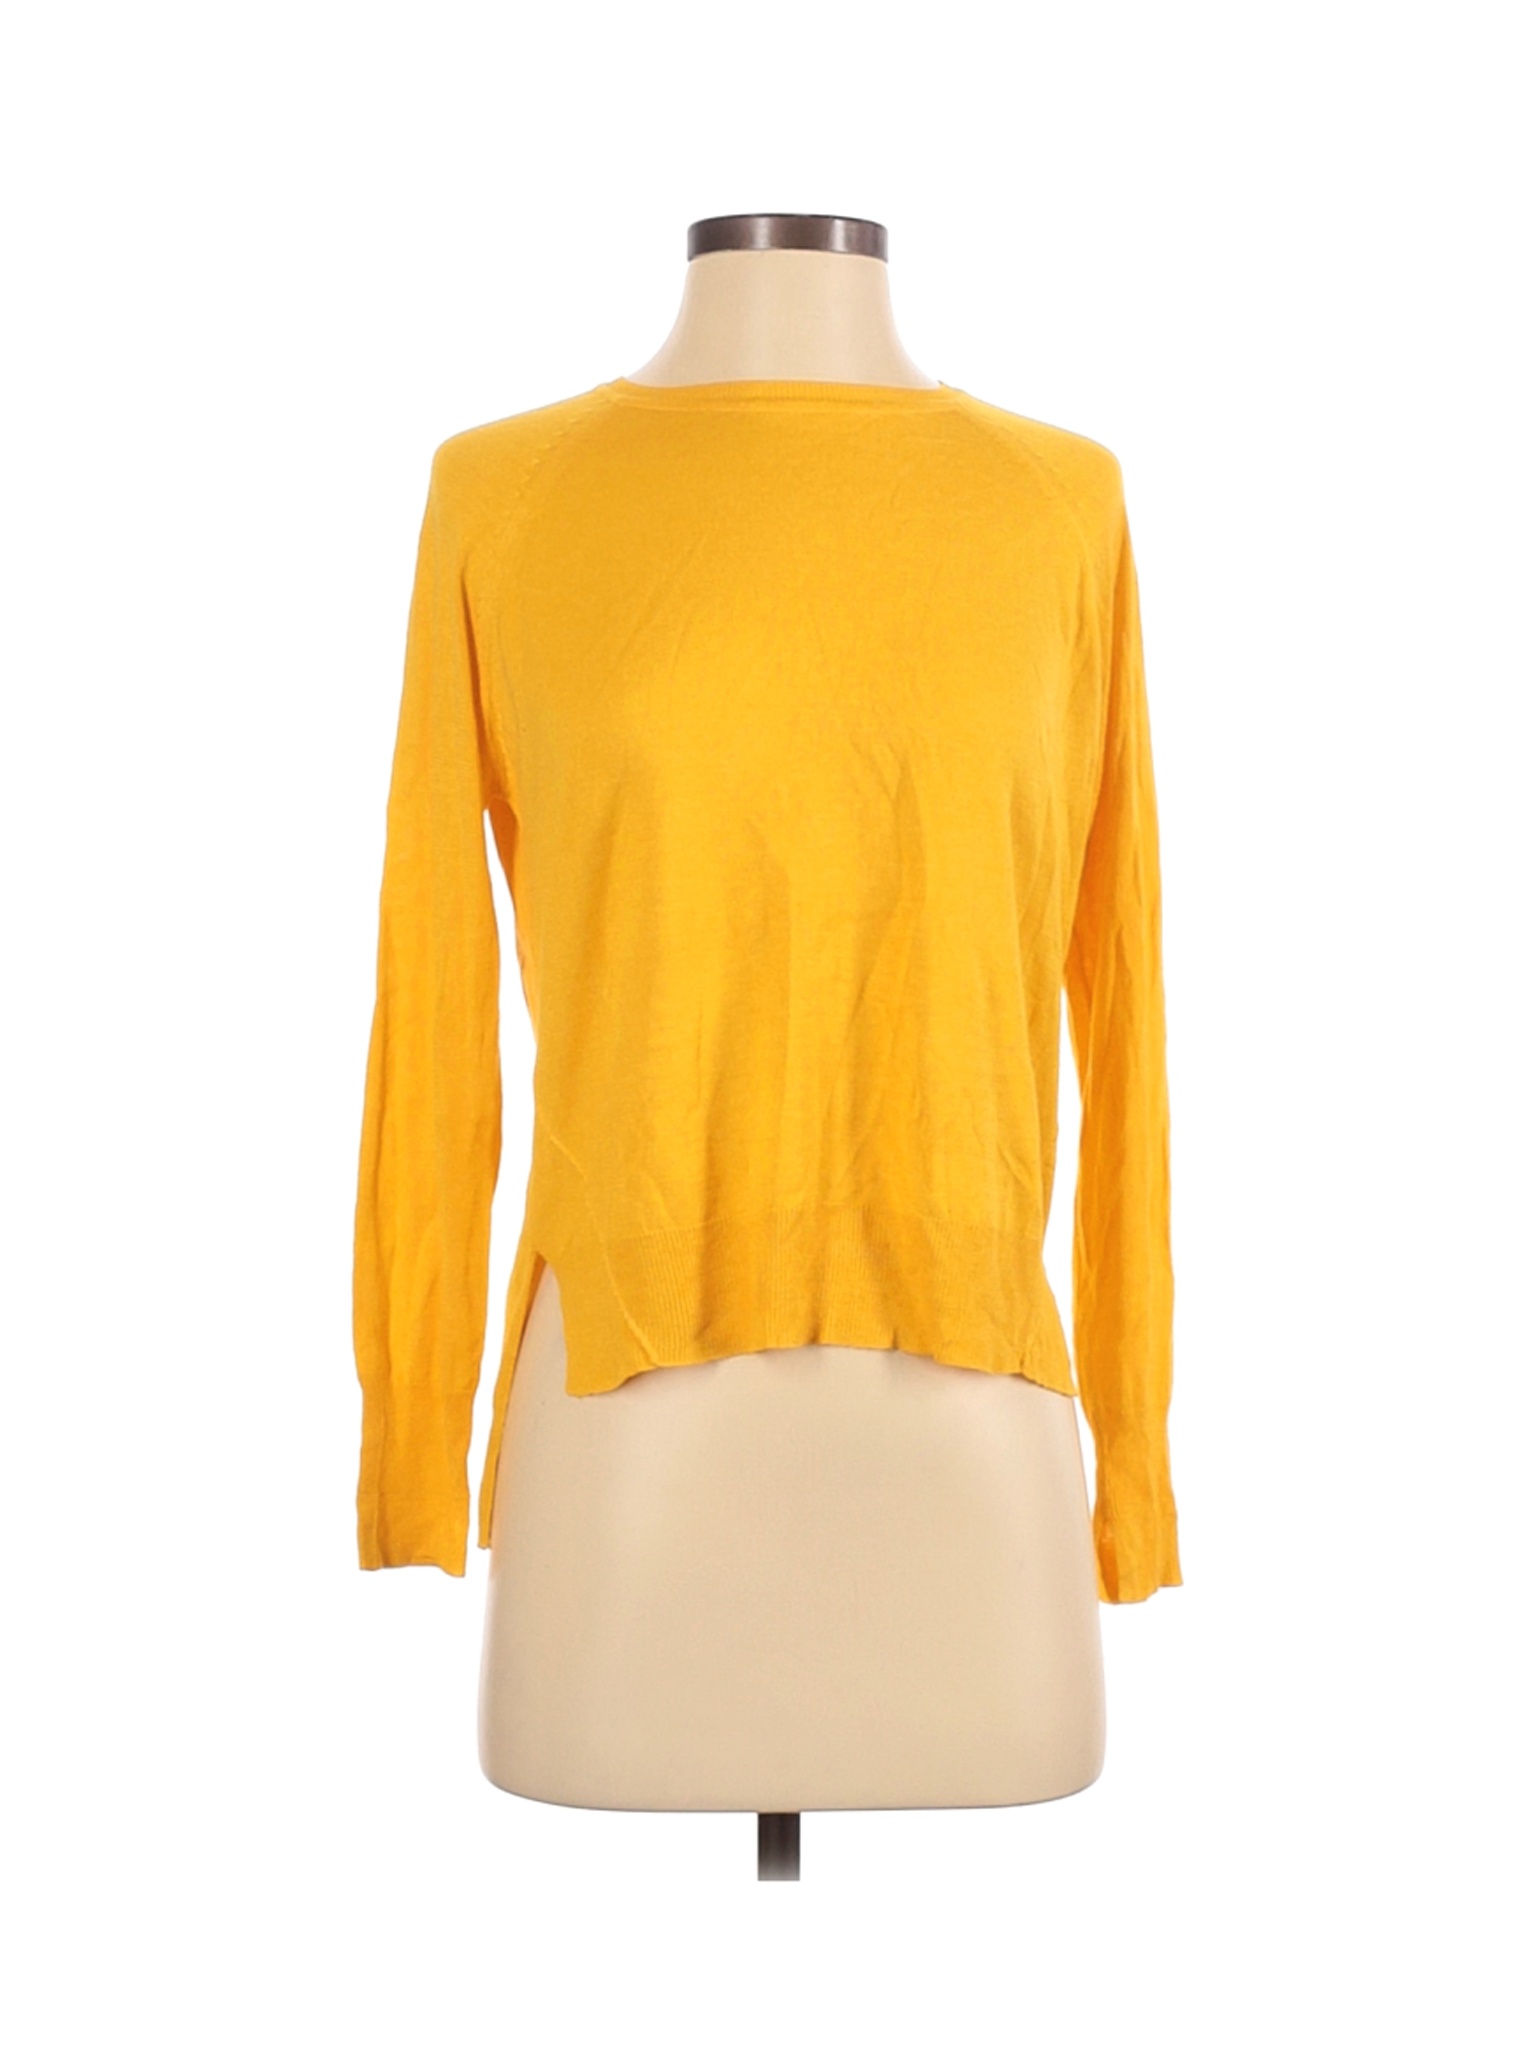 Zara Women Yellow Pullover Sweater S | eBay